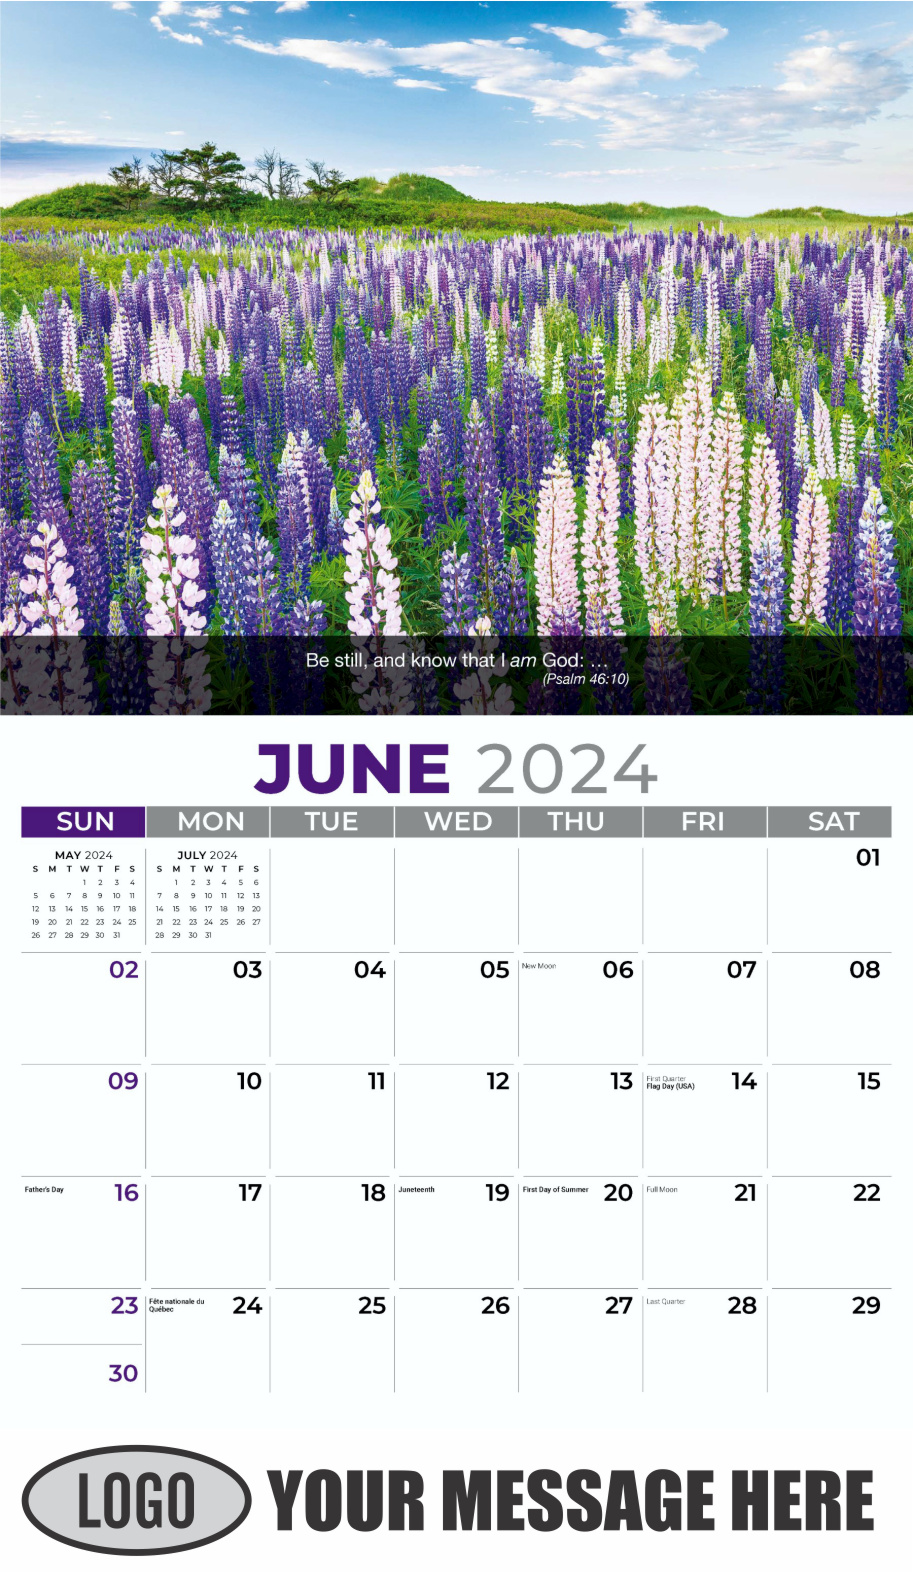 Faith Passages 2024 Christian Business Advertising Calendar - June